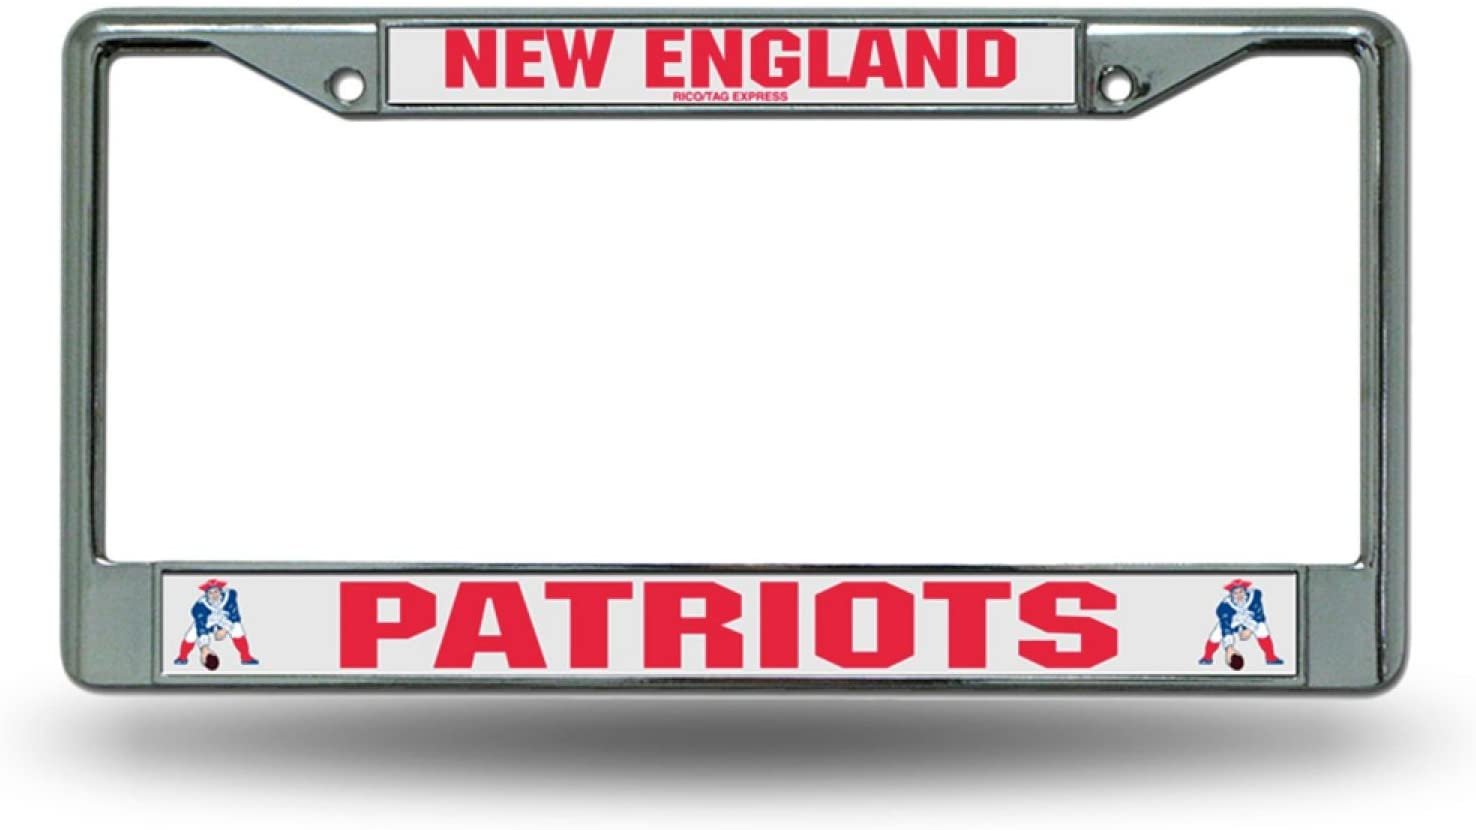 New England Patriots Retro Logo Metal License Plate Frame Chrome Tag Cover, 12x6 Inch